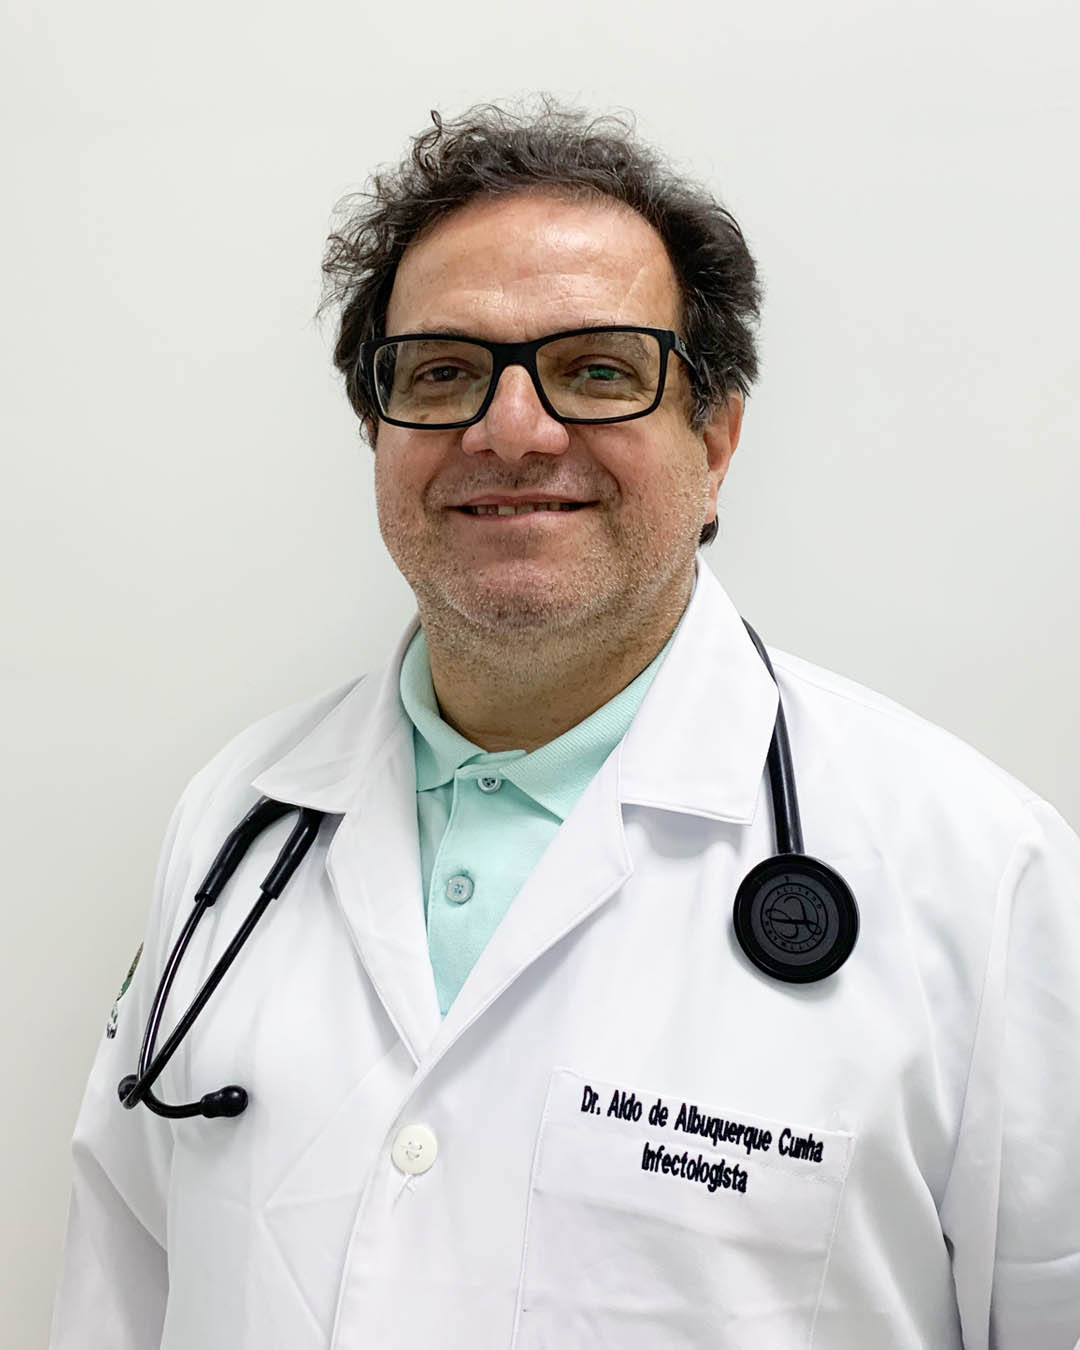 Dr. Aldo de A. Cunha